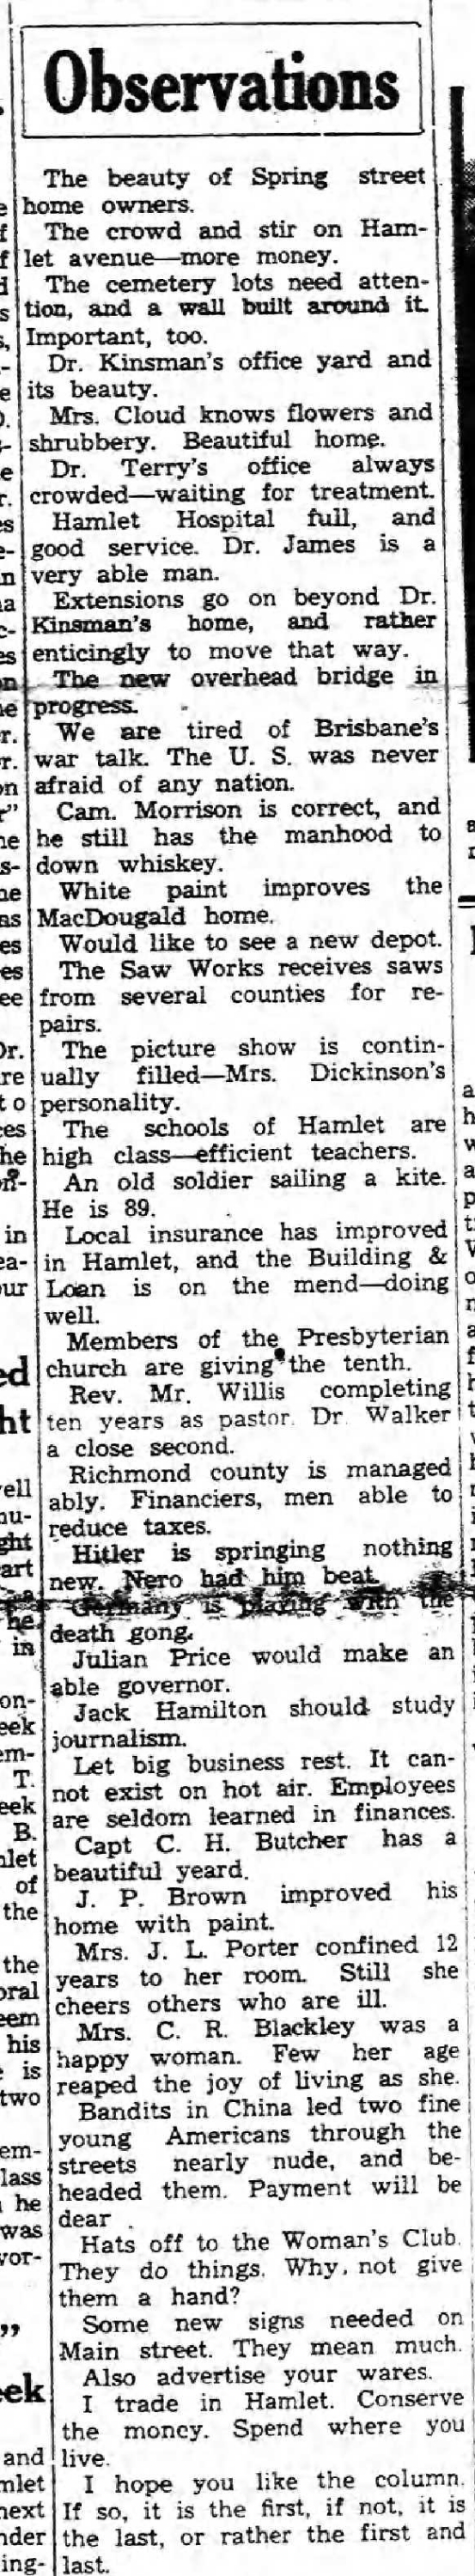 3-7-1935 Hamlet News observations.jpg